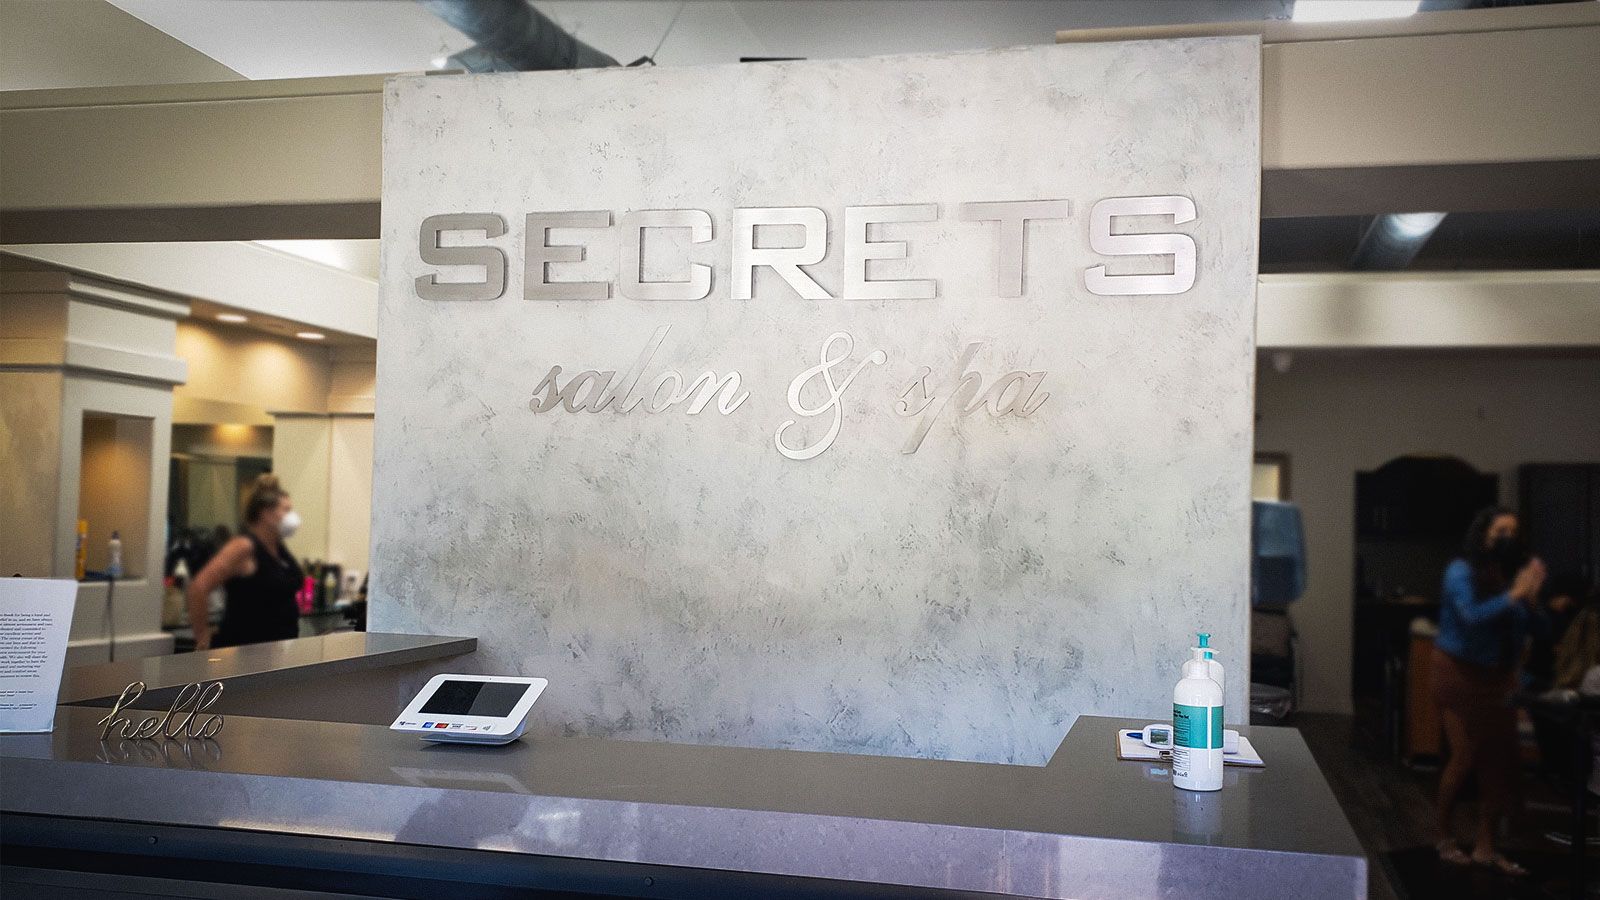 Secrets salon front desk signs